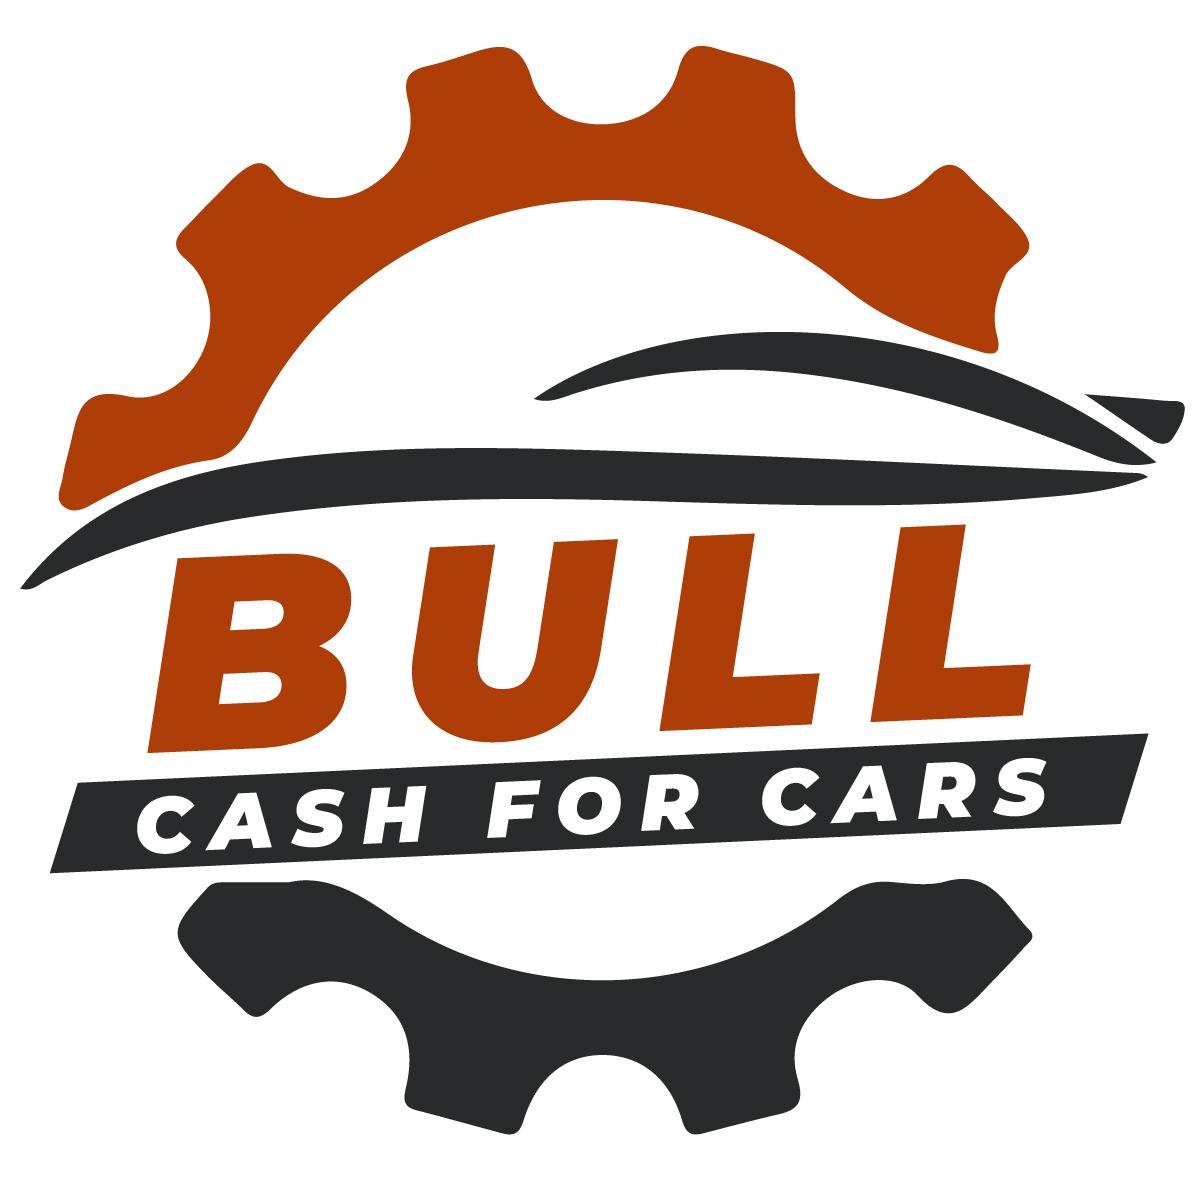 Bull Cash for Cars Maroondah